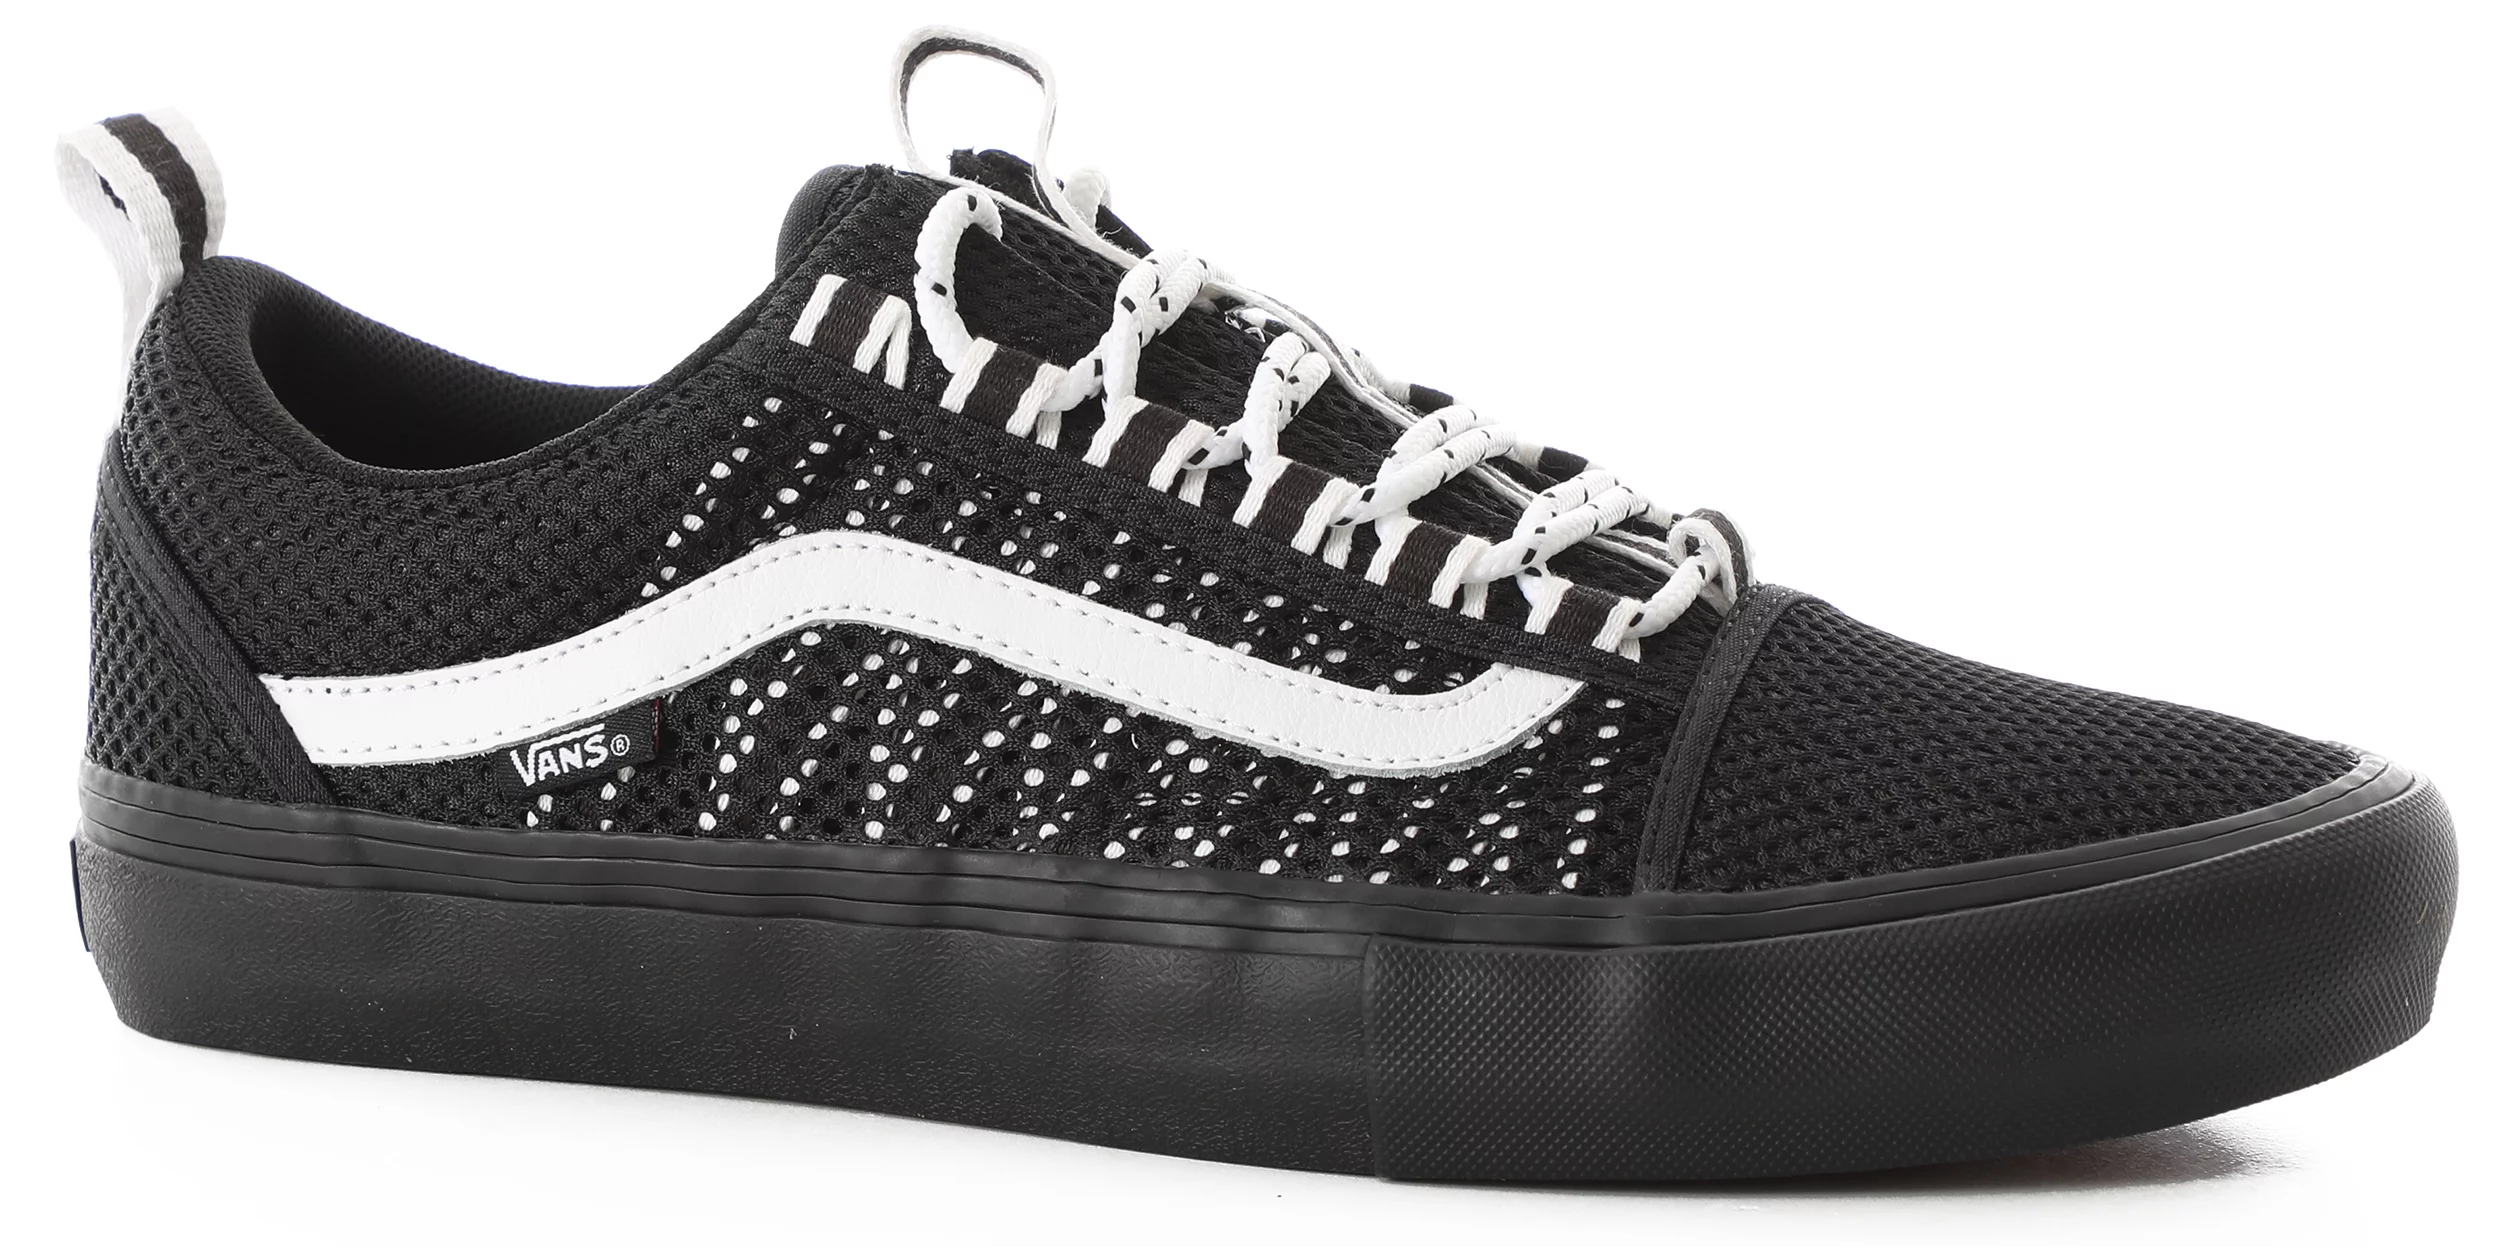 influenza Fauteuil Is aan het huilen Vans Old Skool Pro Sport Skate Shoes - black/black/white | Tactics